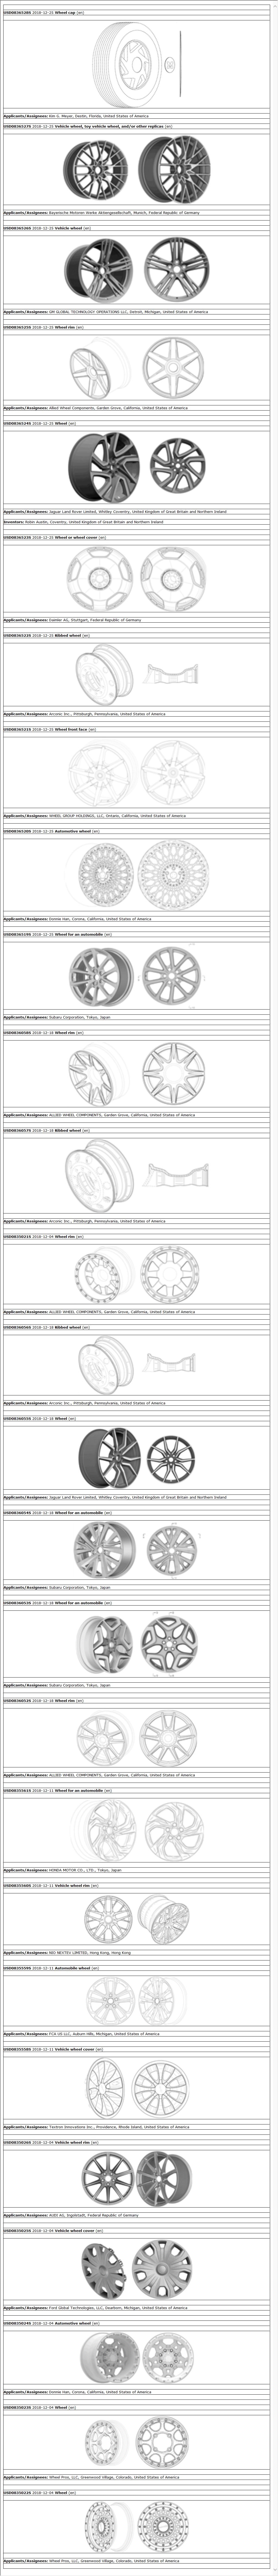 auto wheel patents